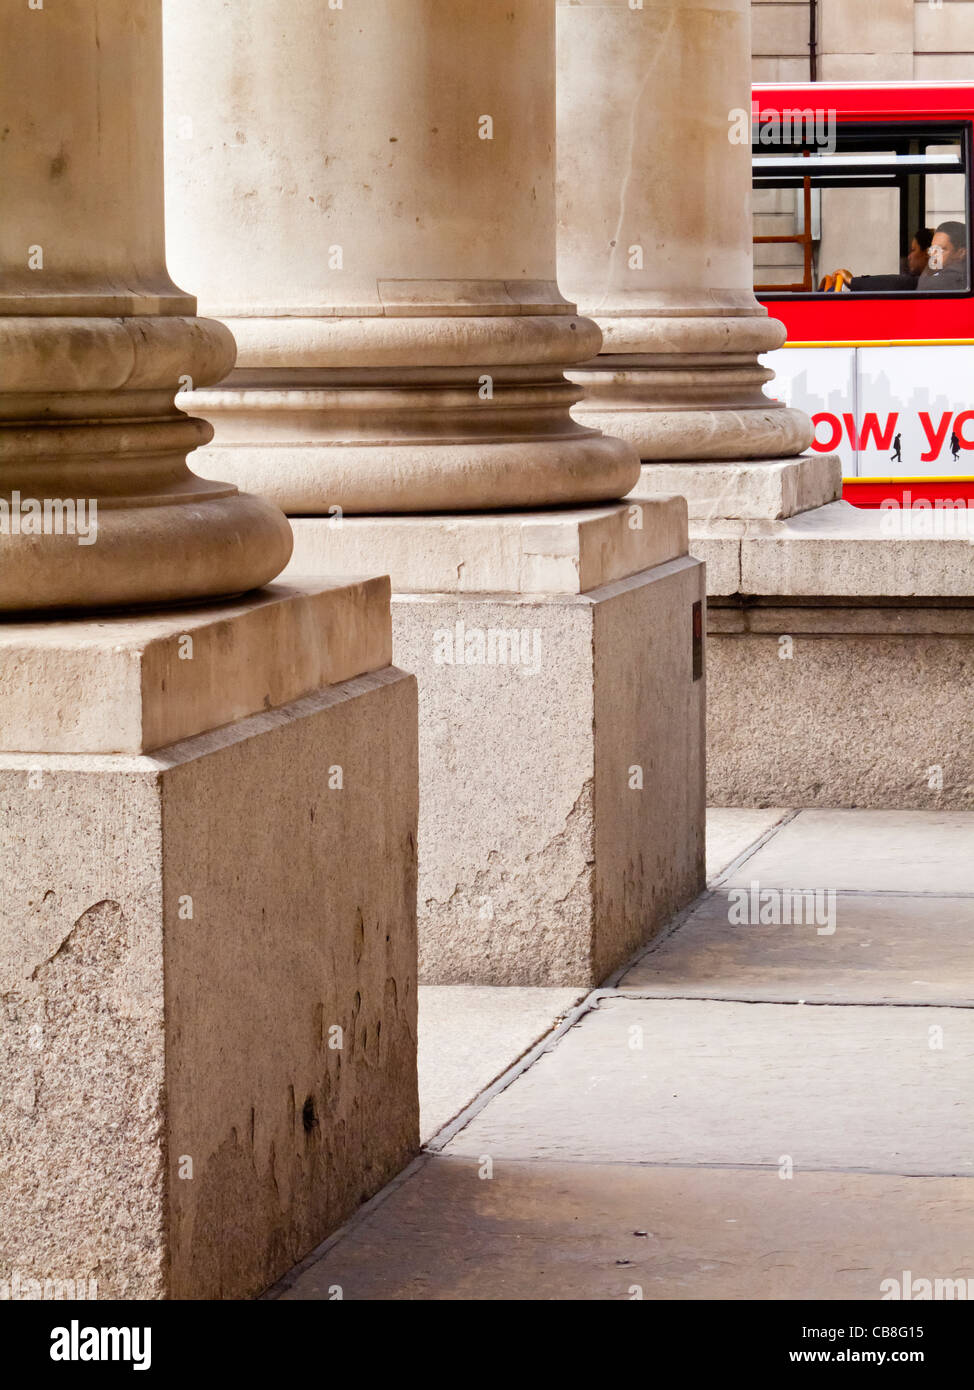 Dettaglio delle colonne in pietra all'ingresso del Royal Exchange edificio nella città di Londra Inghilterra con il bus rosso a distanza Foto Stock